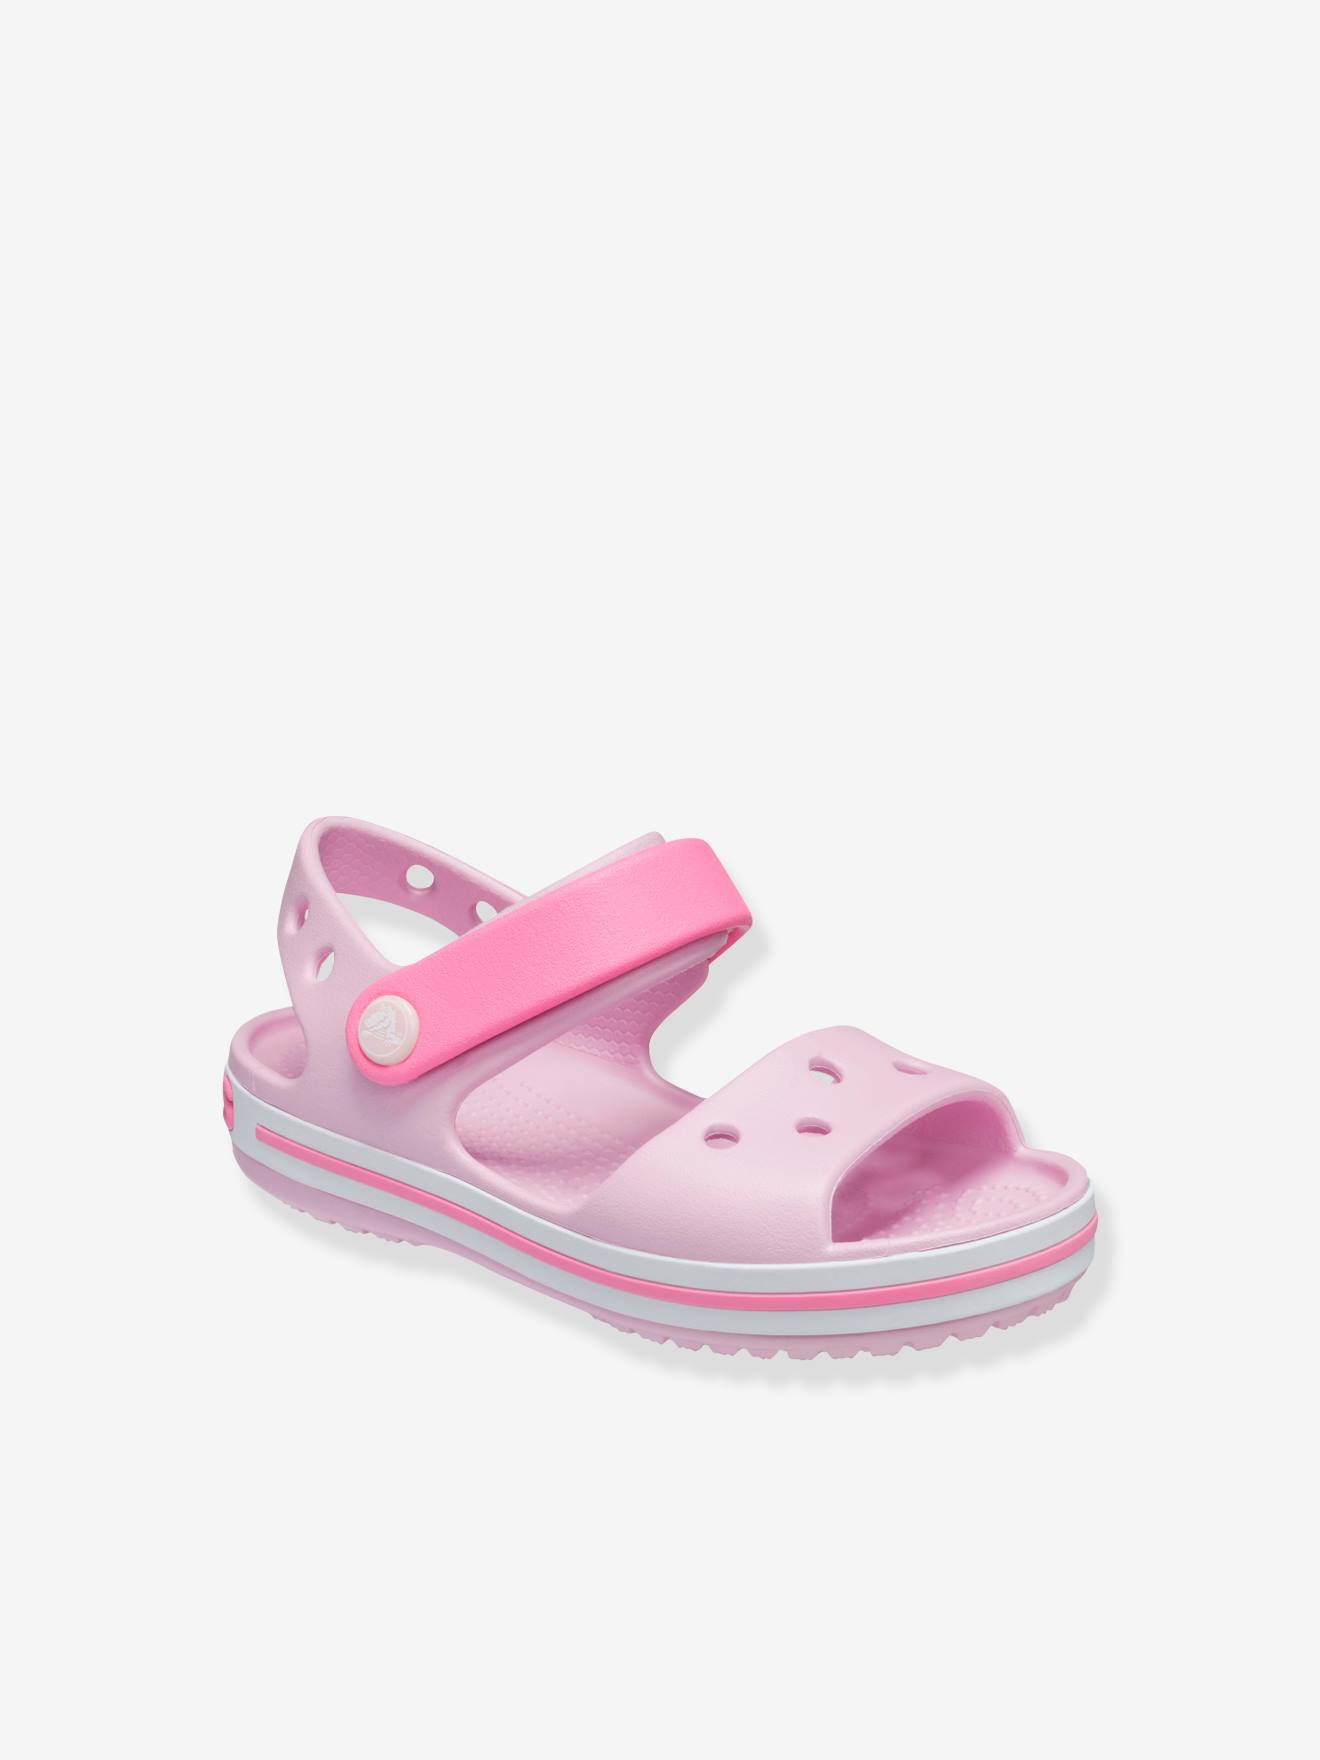 Crocband Sandal Kids by CROCS(TM) pink light solid